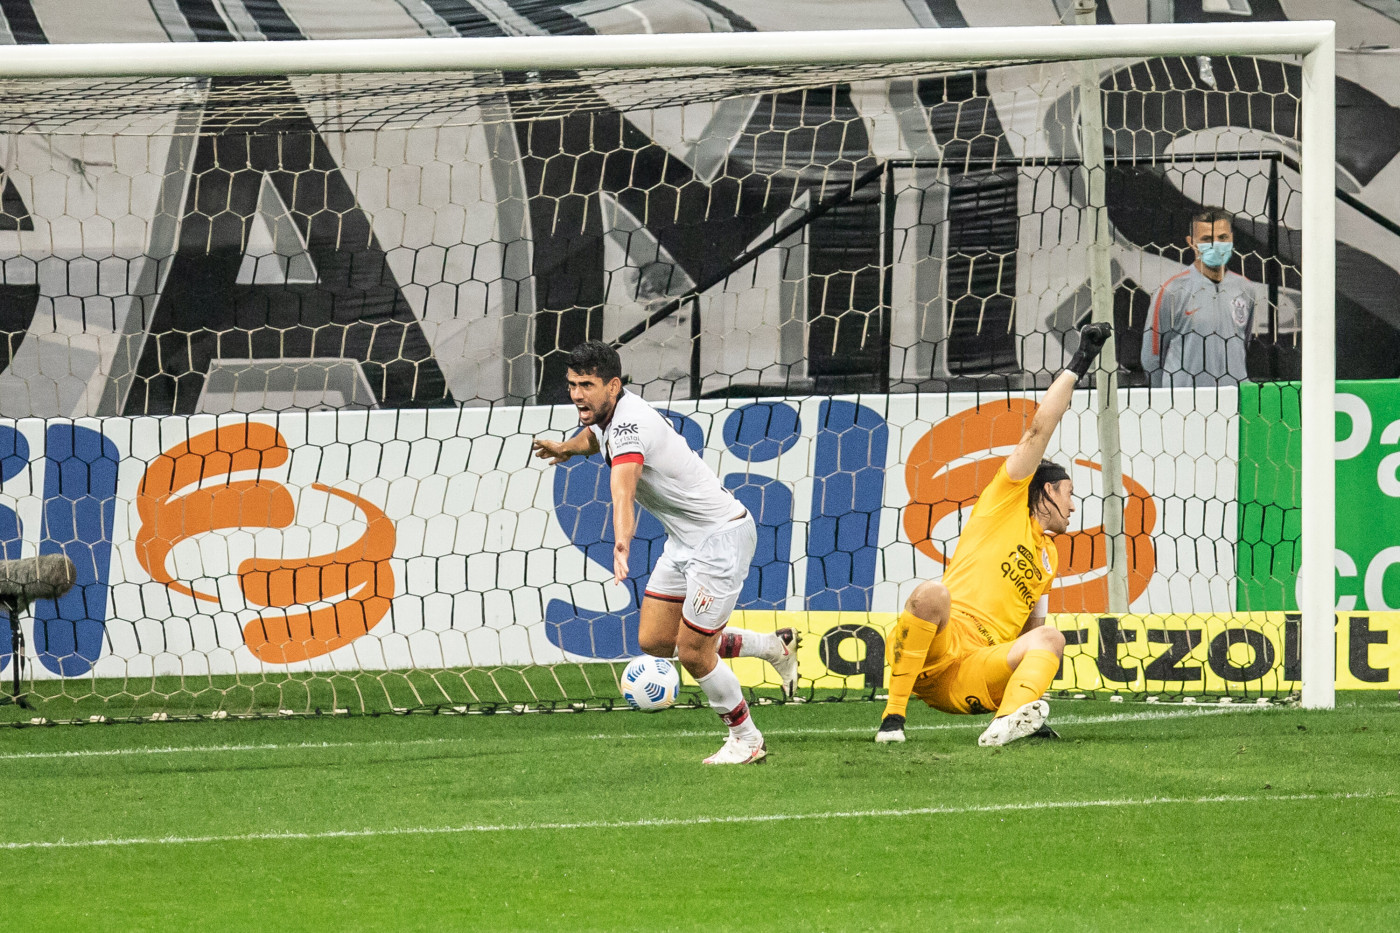 Atacante do Atlético-GO comemora gol marcado contra Corinthians